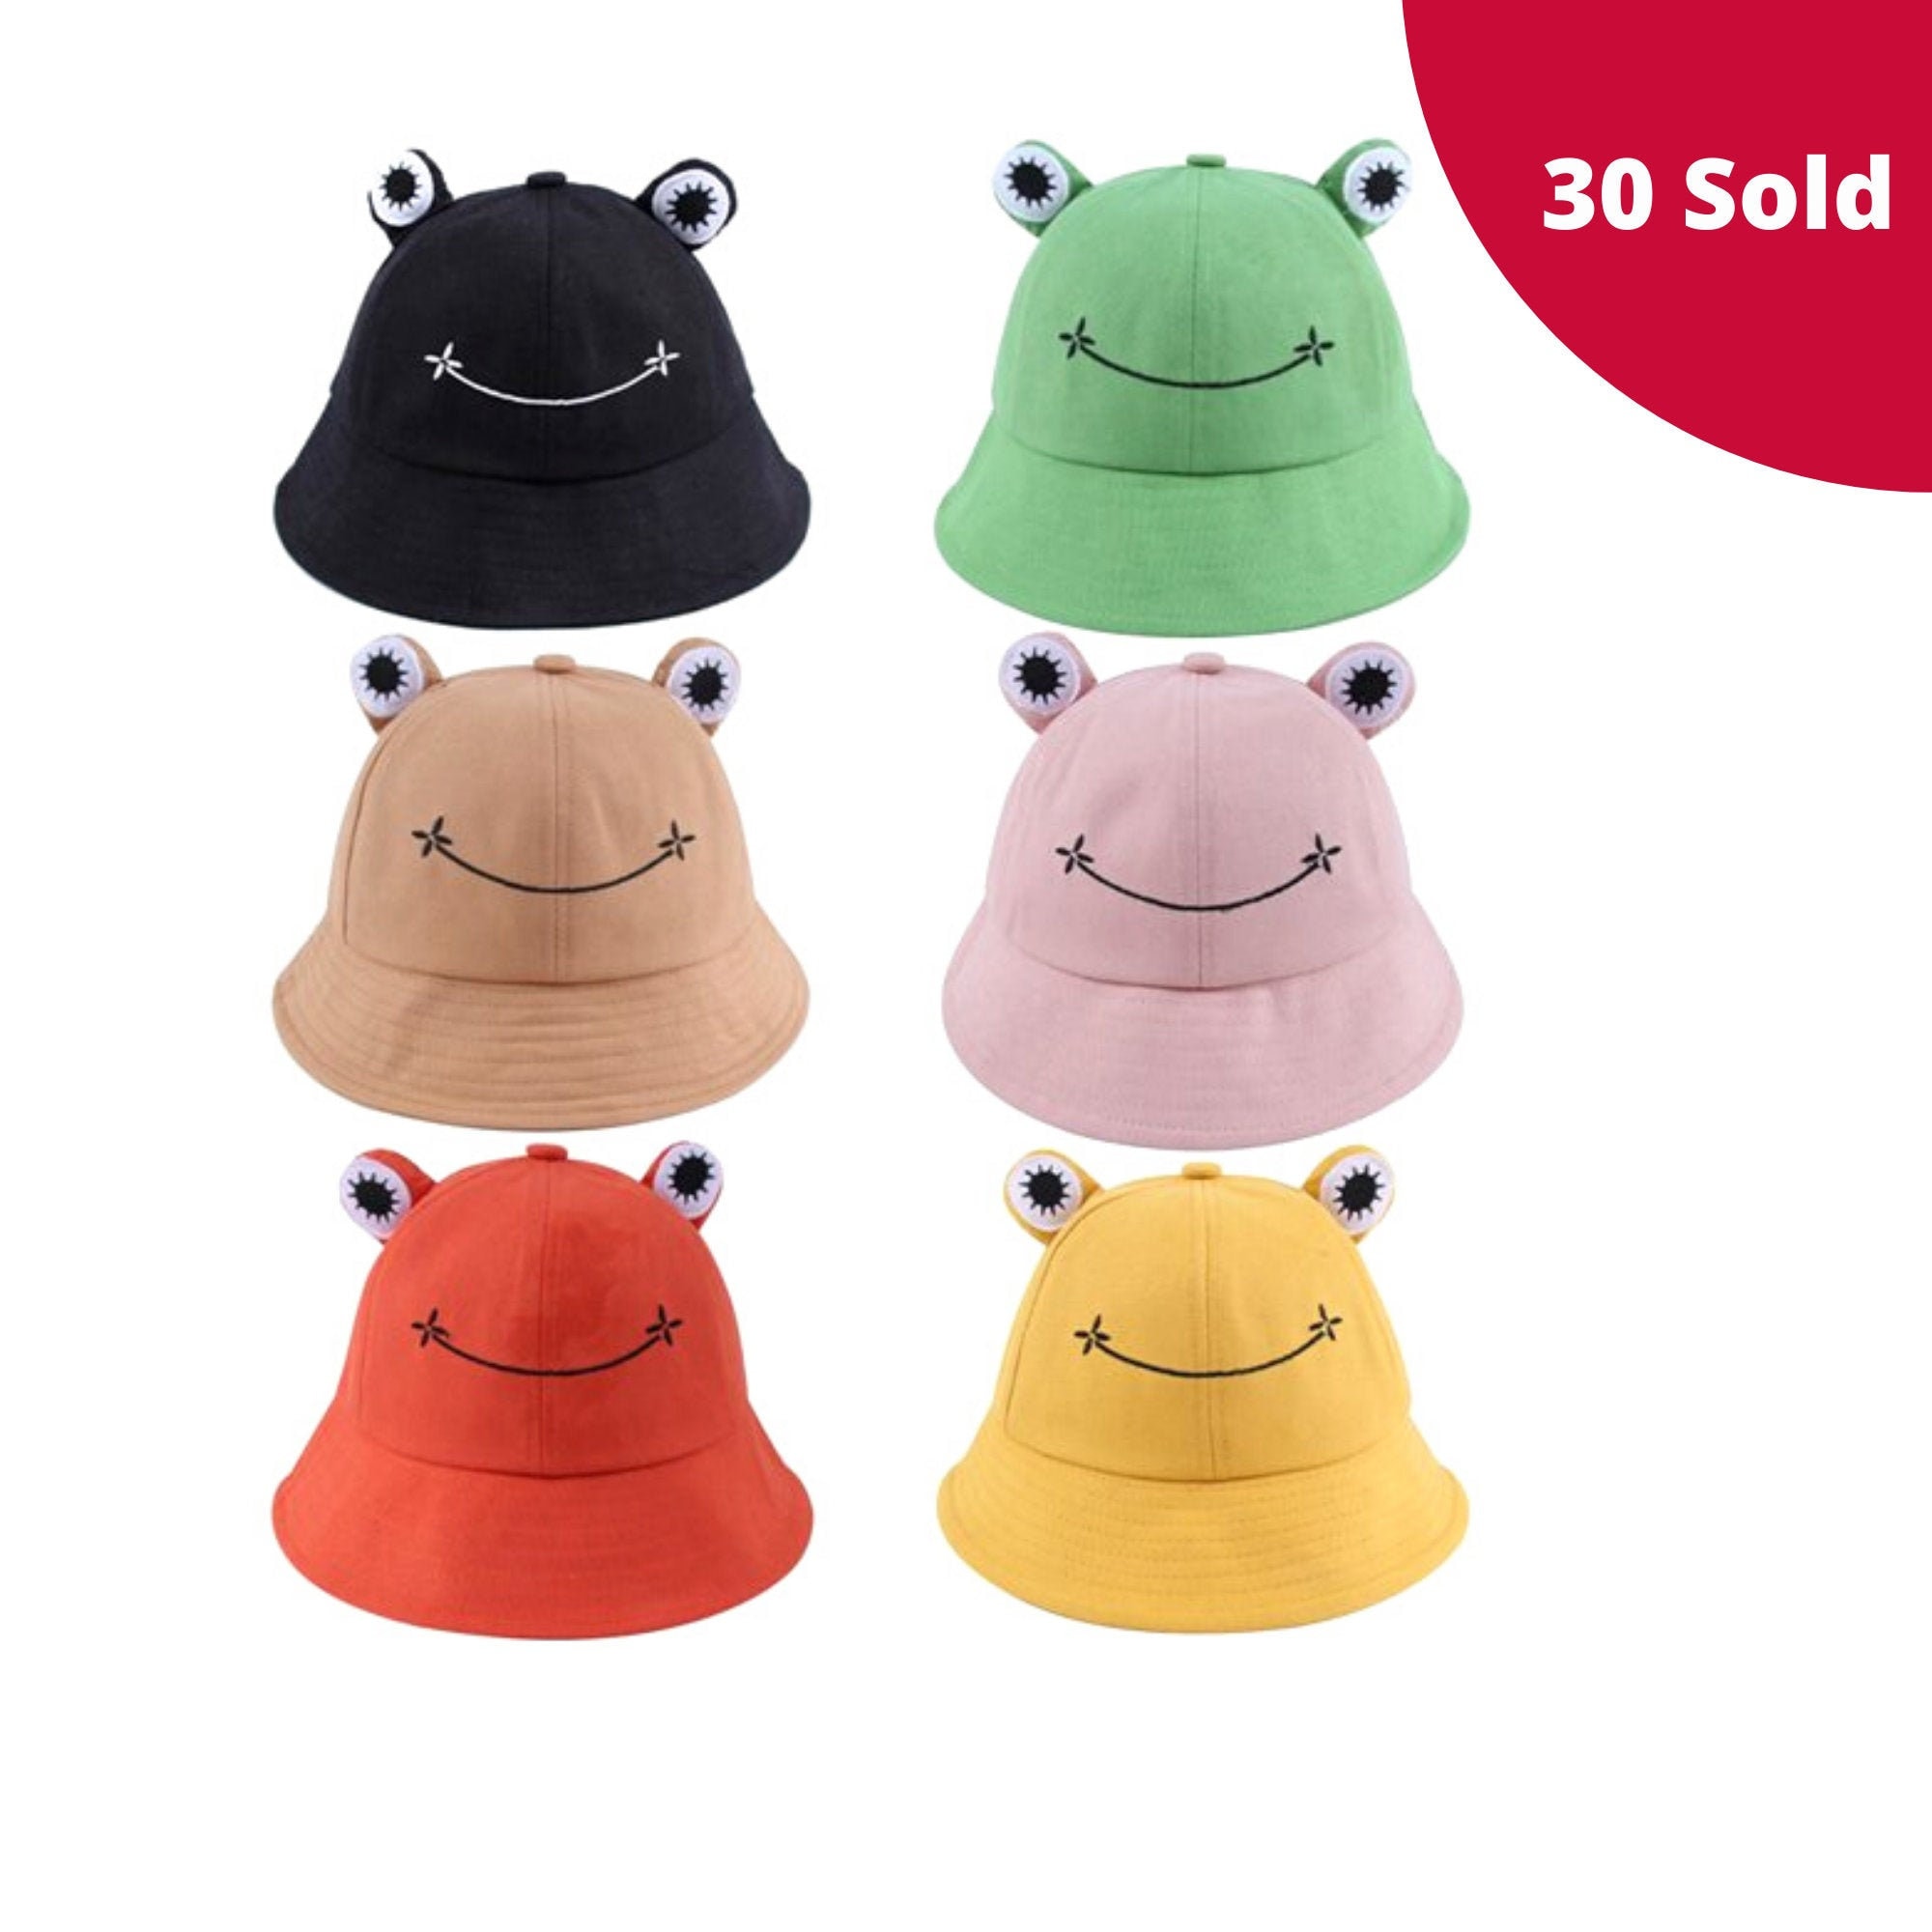 Fun Frog Bucket Hat – Kawaiies